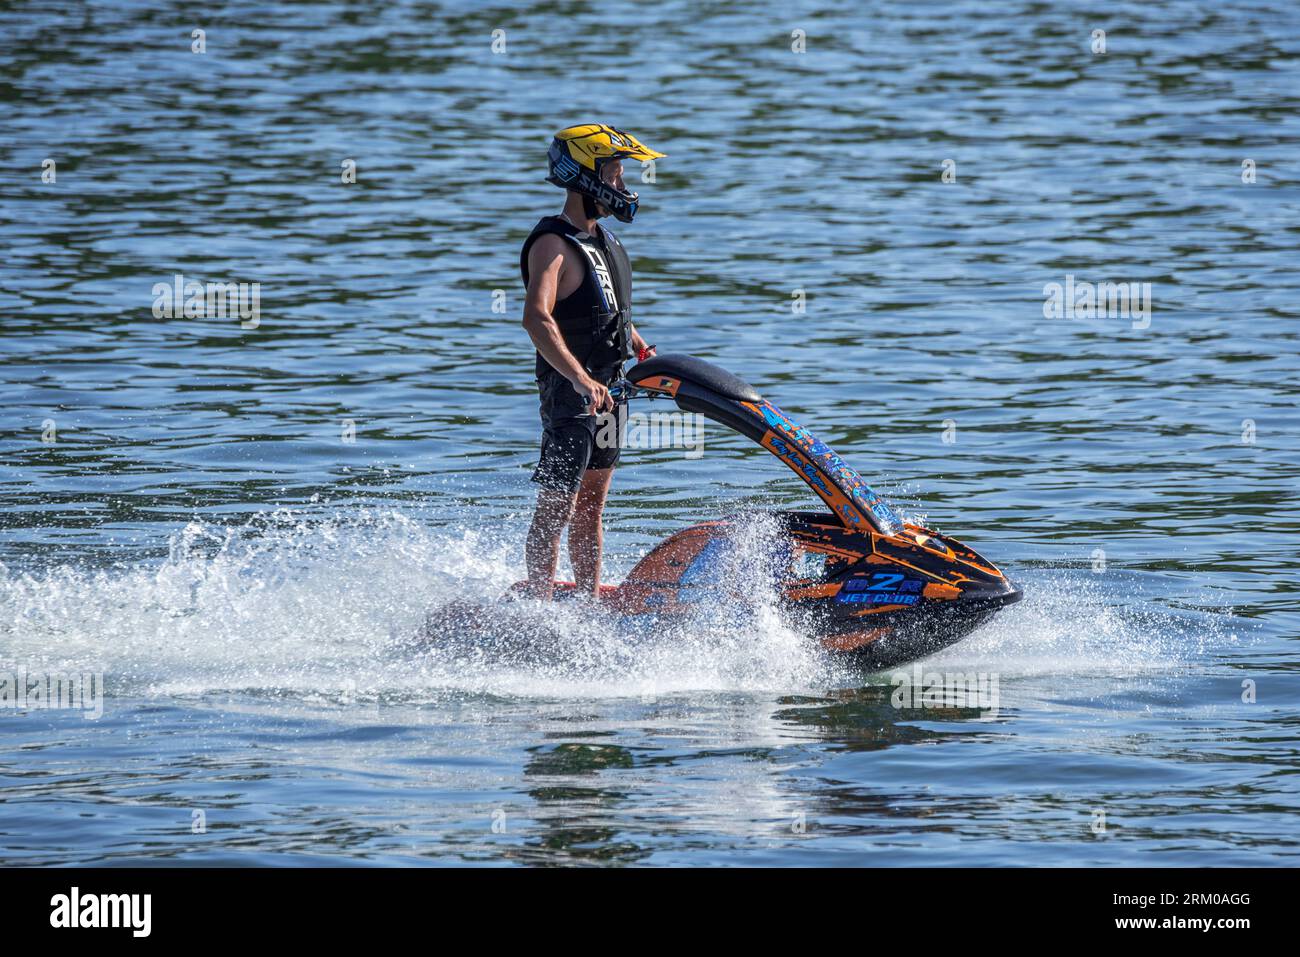 Jet Skier Reiten Jet Ski / Jetski / Wasserroller / Stand-up persönliches Wasserfahrzeug / PWC auf dem See Stockfoto